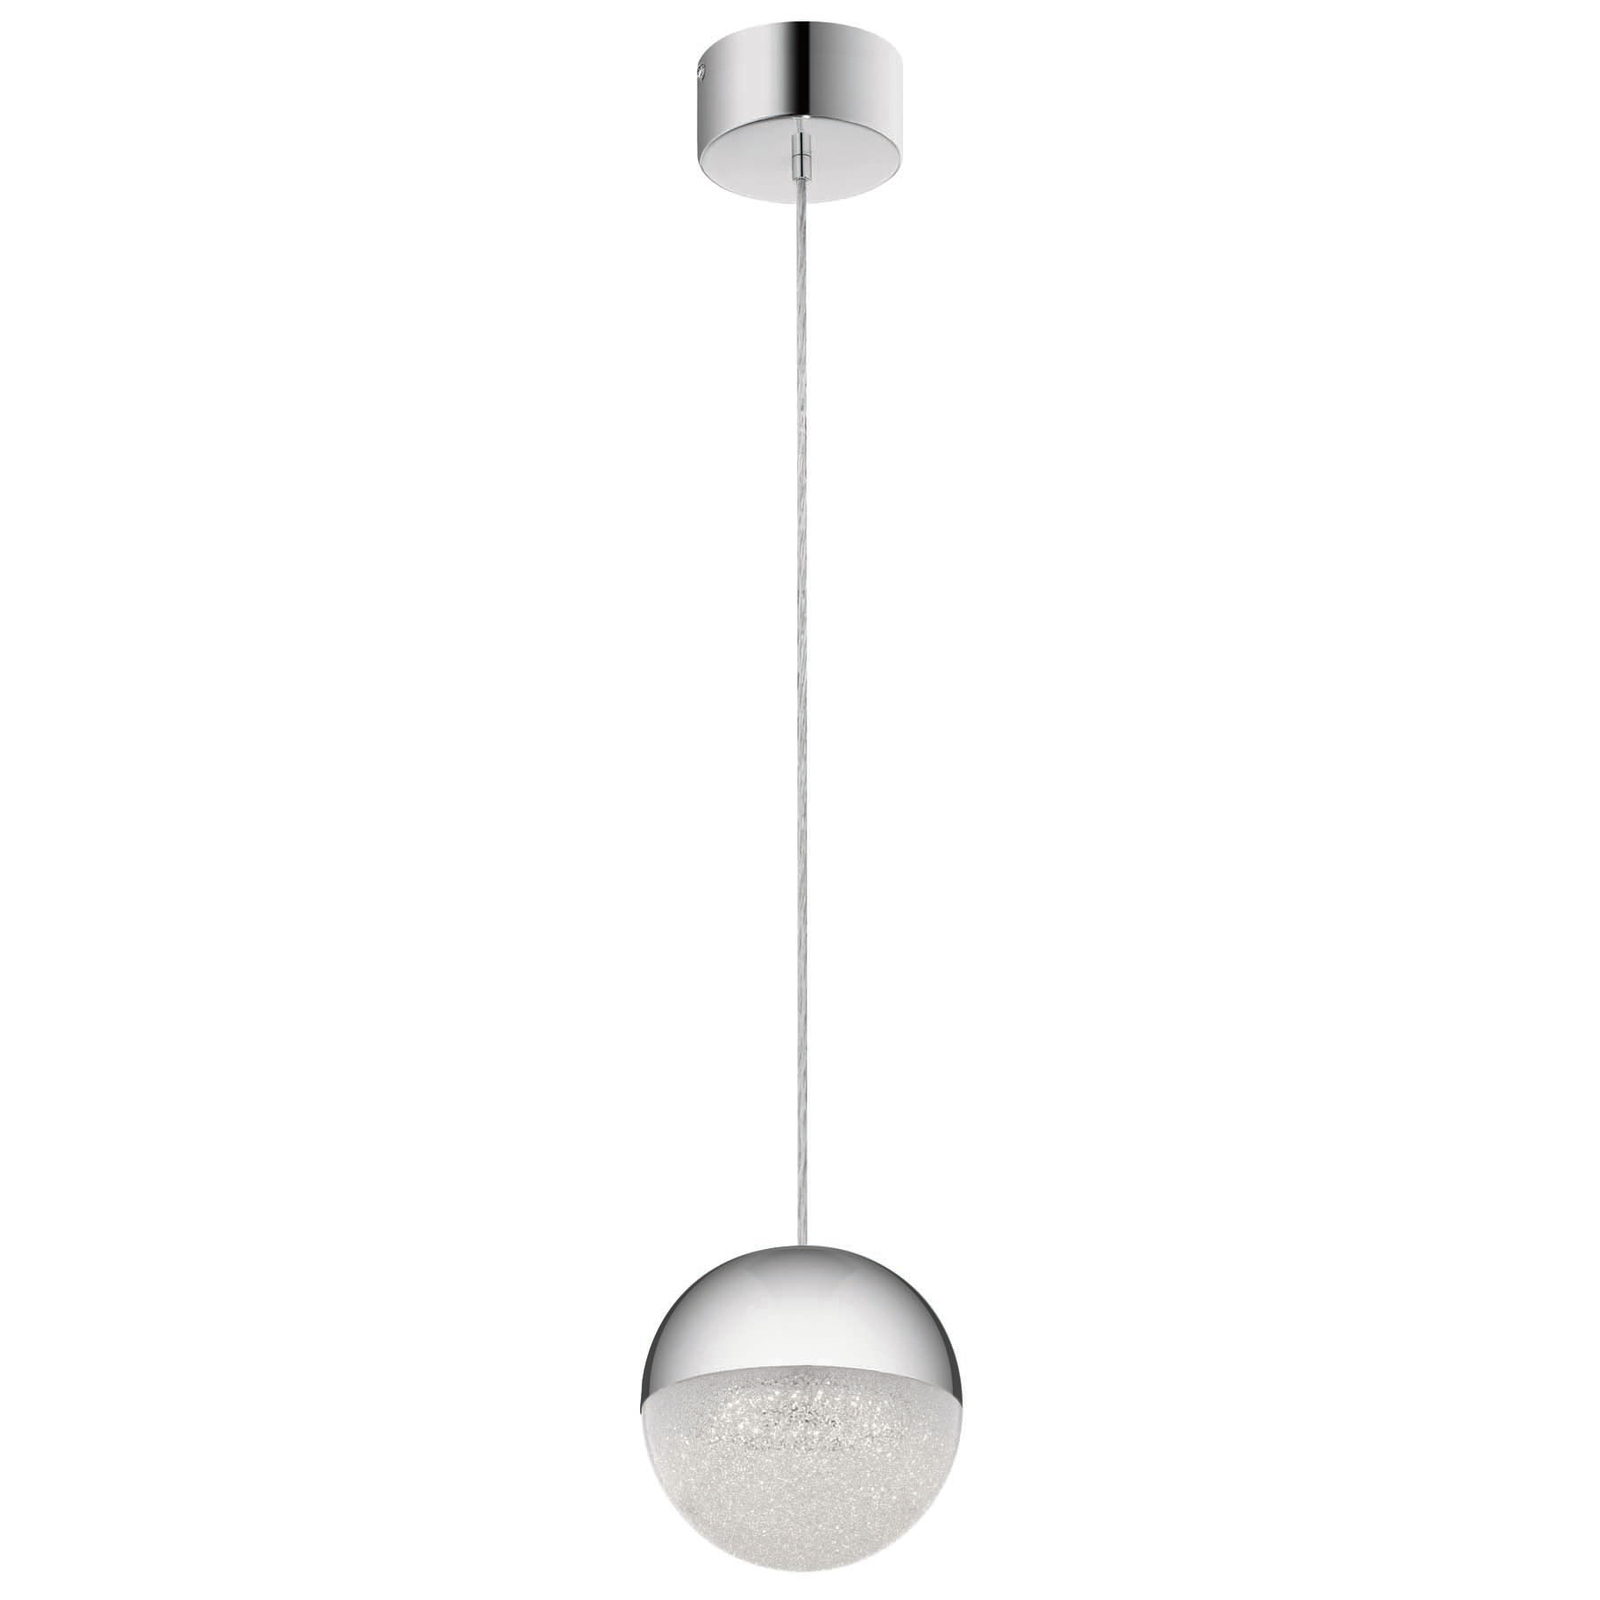 Moonlit LED hanglamp, chroomkleurig, aluminium, Ø 20 cm, globe